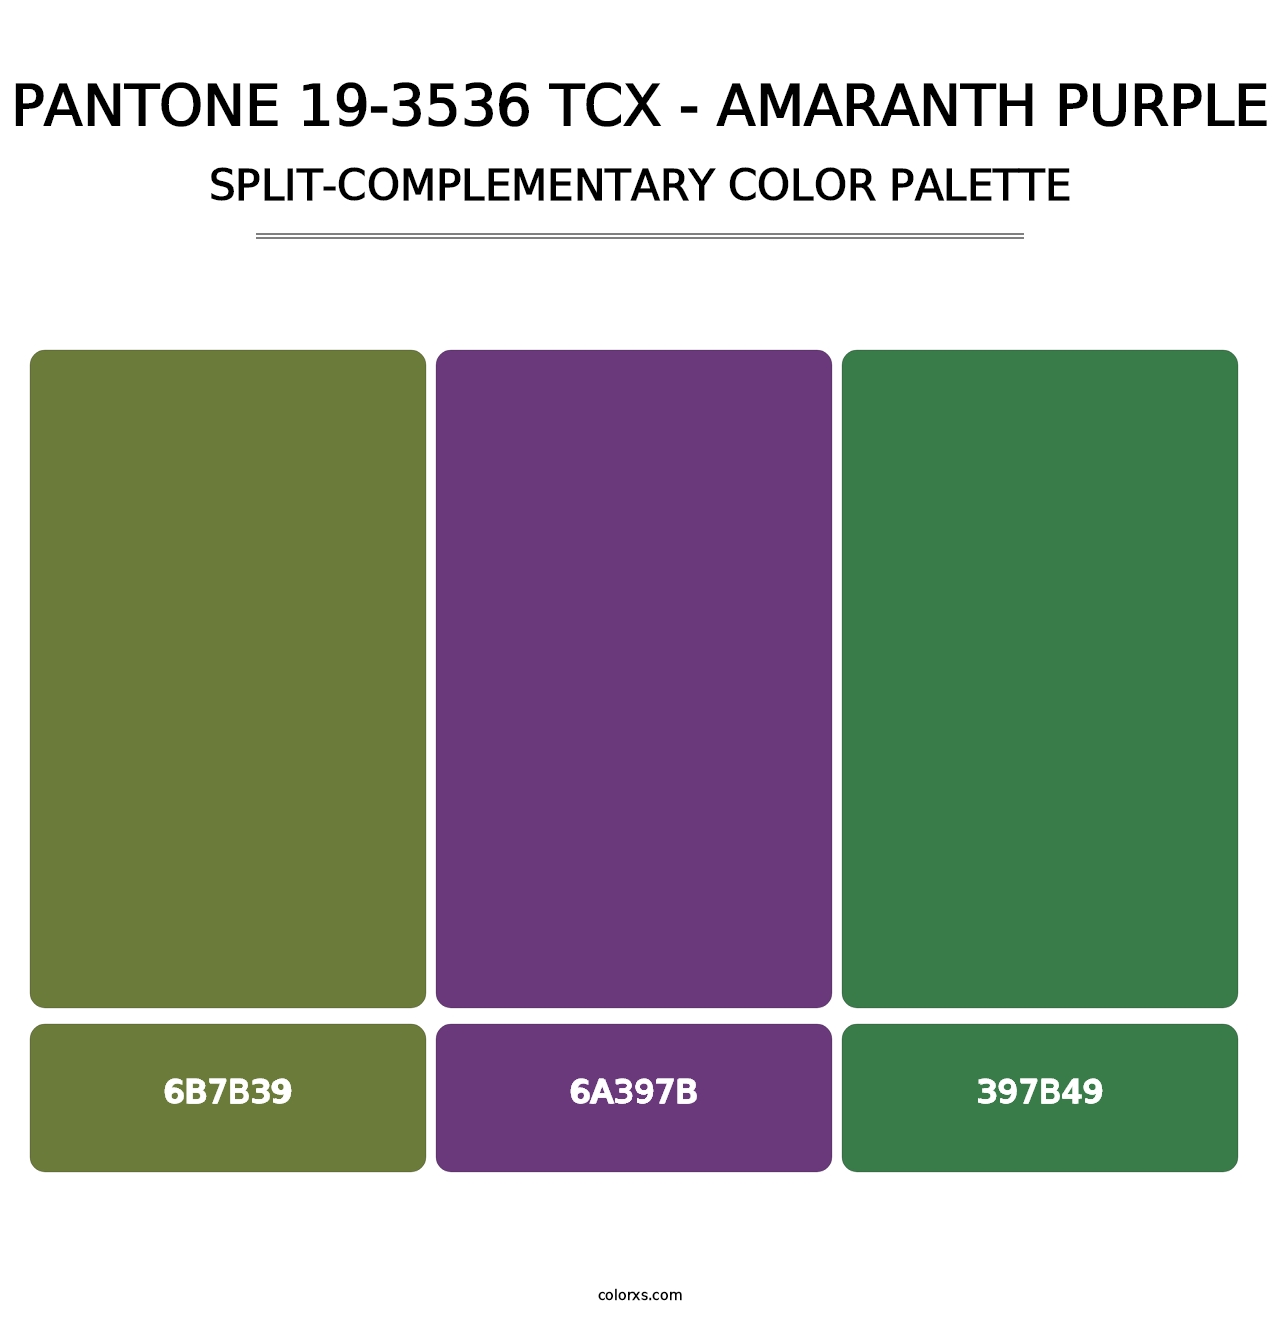 PANTONE 19-3536 TCX - Amaranth Purple - Split-Complementary Color Palette